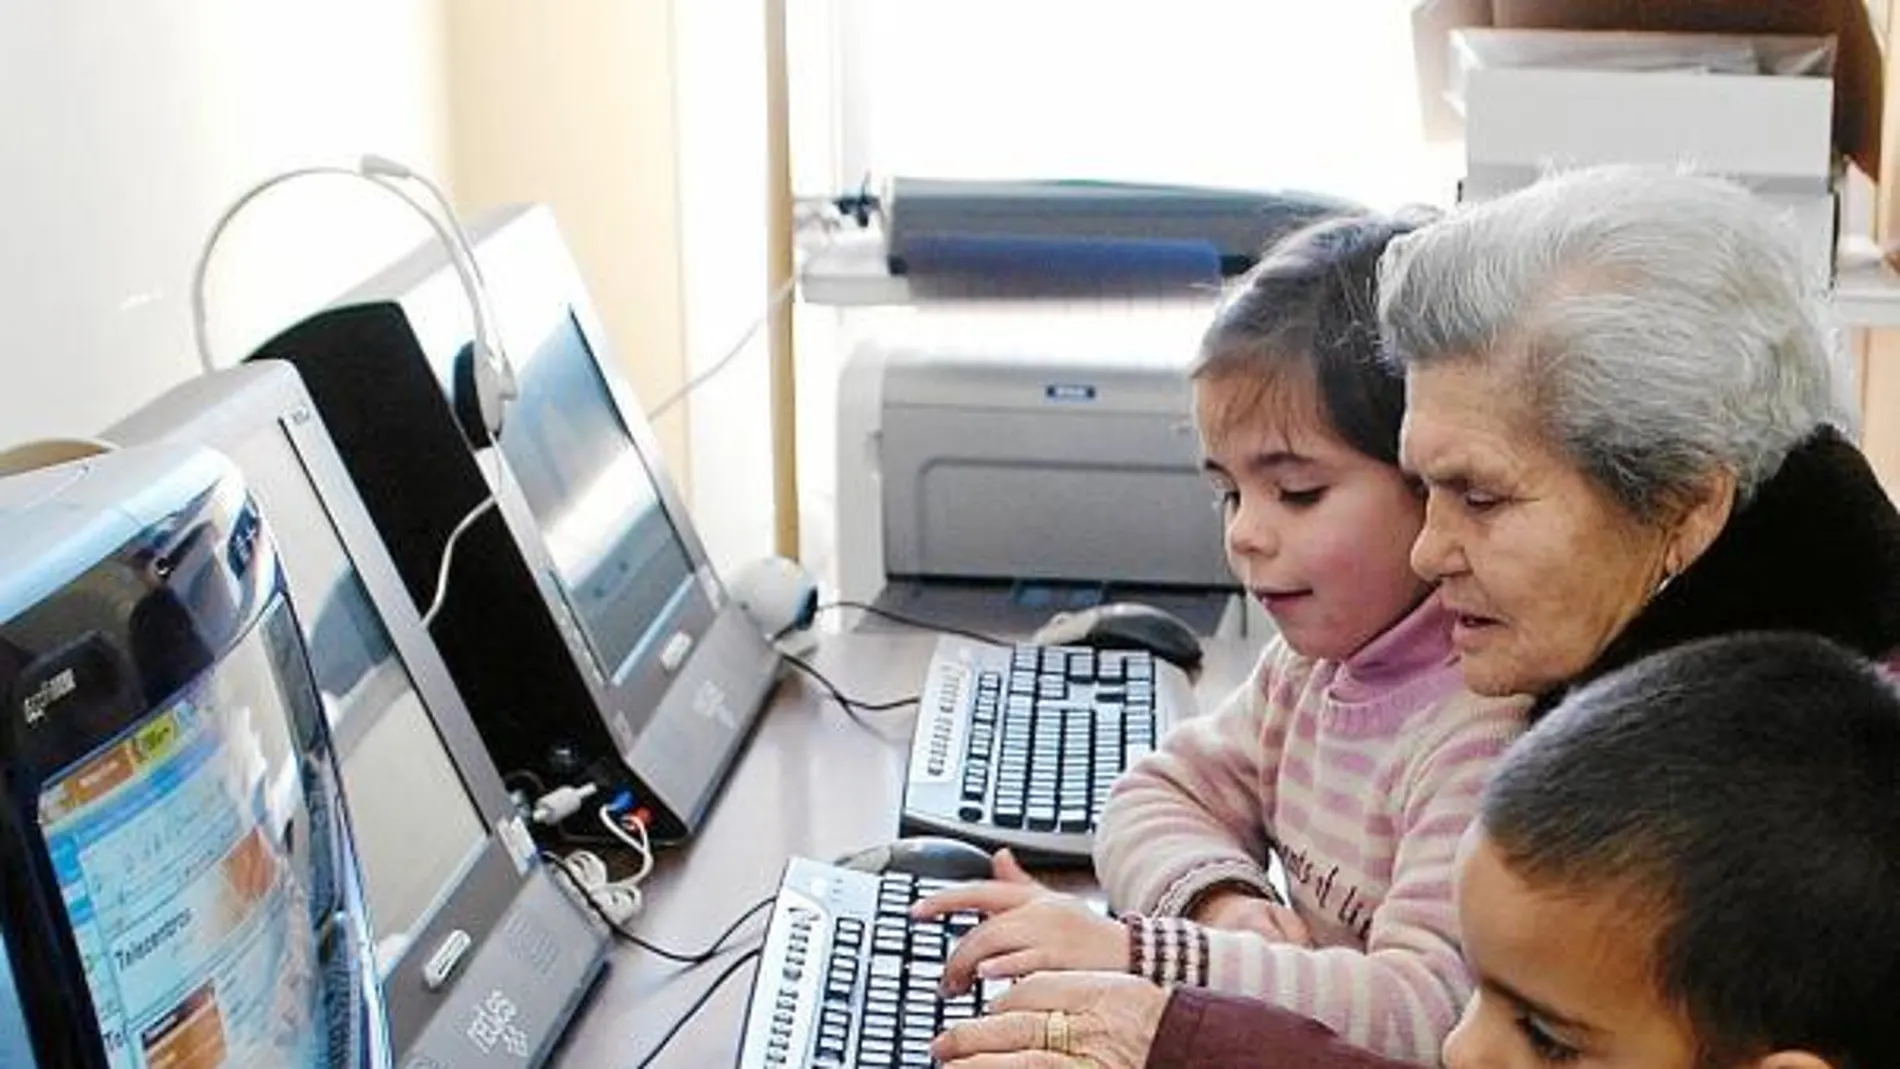 Unas vecinas de Villaharta (Córdoba), con sus nietos, aprenden a utilizar el ordenador gracias a un proyecto de la diputación de Córdoba